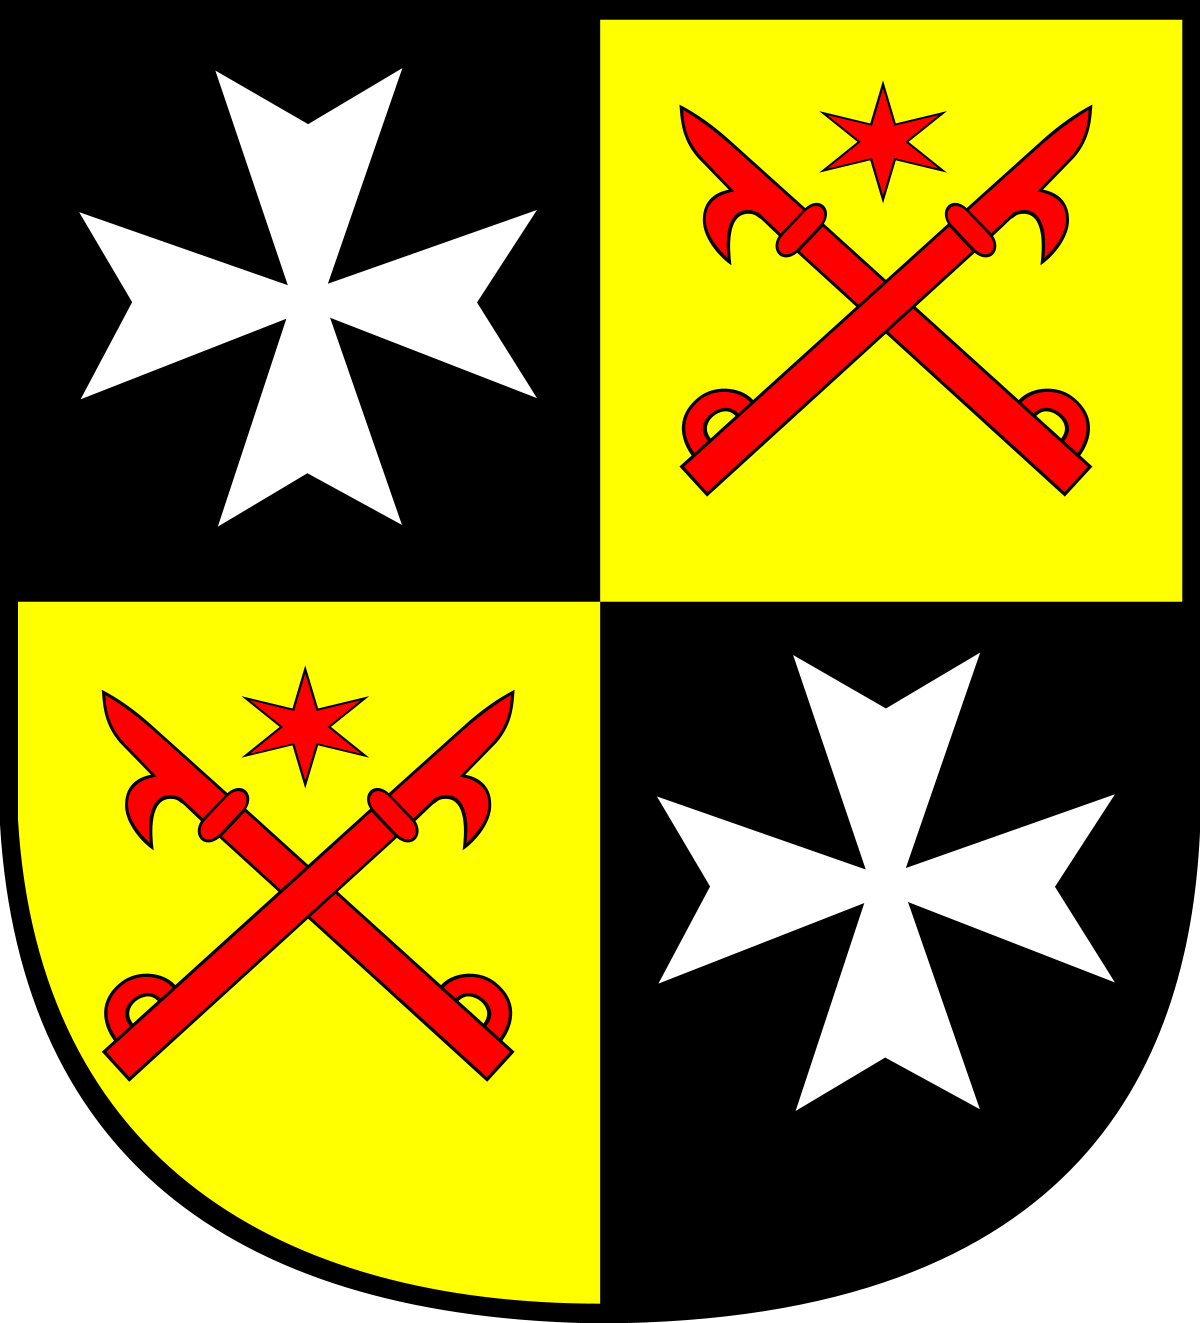 Herb powiatu sulęcińskiego przedstawia na tarczy typu hiszpańskiego, czwórdzielnej w krzyż w polach heraldycznych pierwszym i czwartym czarnej barwy, srebrny krzyż maltański. W polach drugim i trzecim barwy złotej dwa skrzyżowane czerwone bosaki ponad którymi widnieje czerwona, sześciopromienna gwiazda.